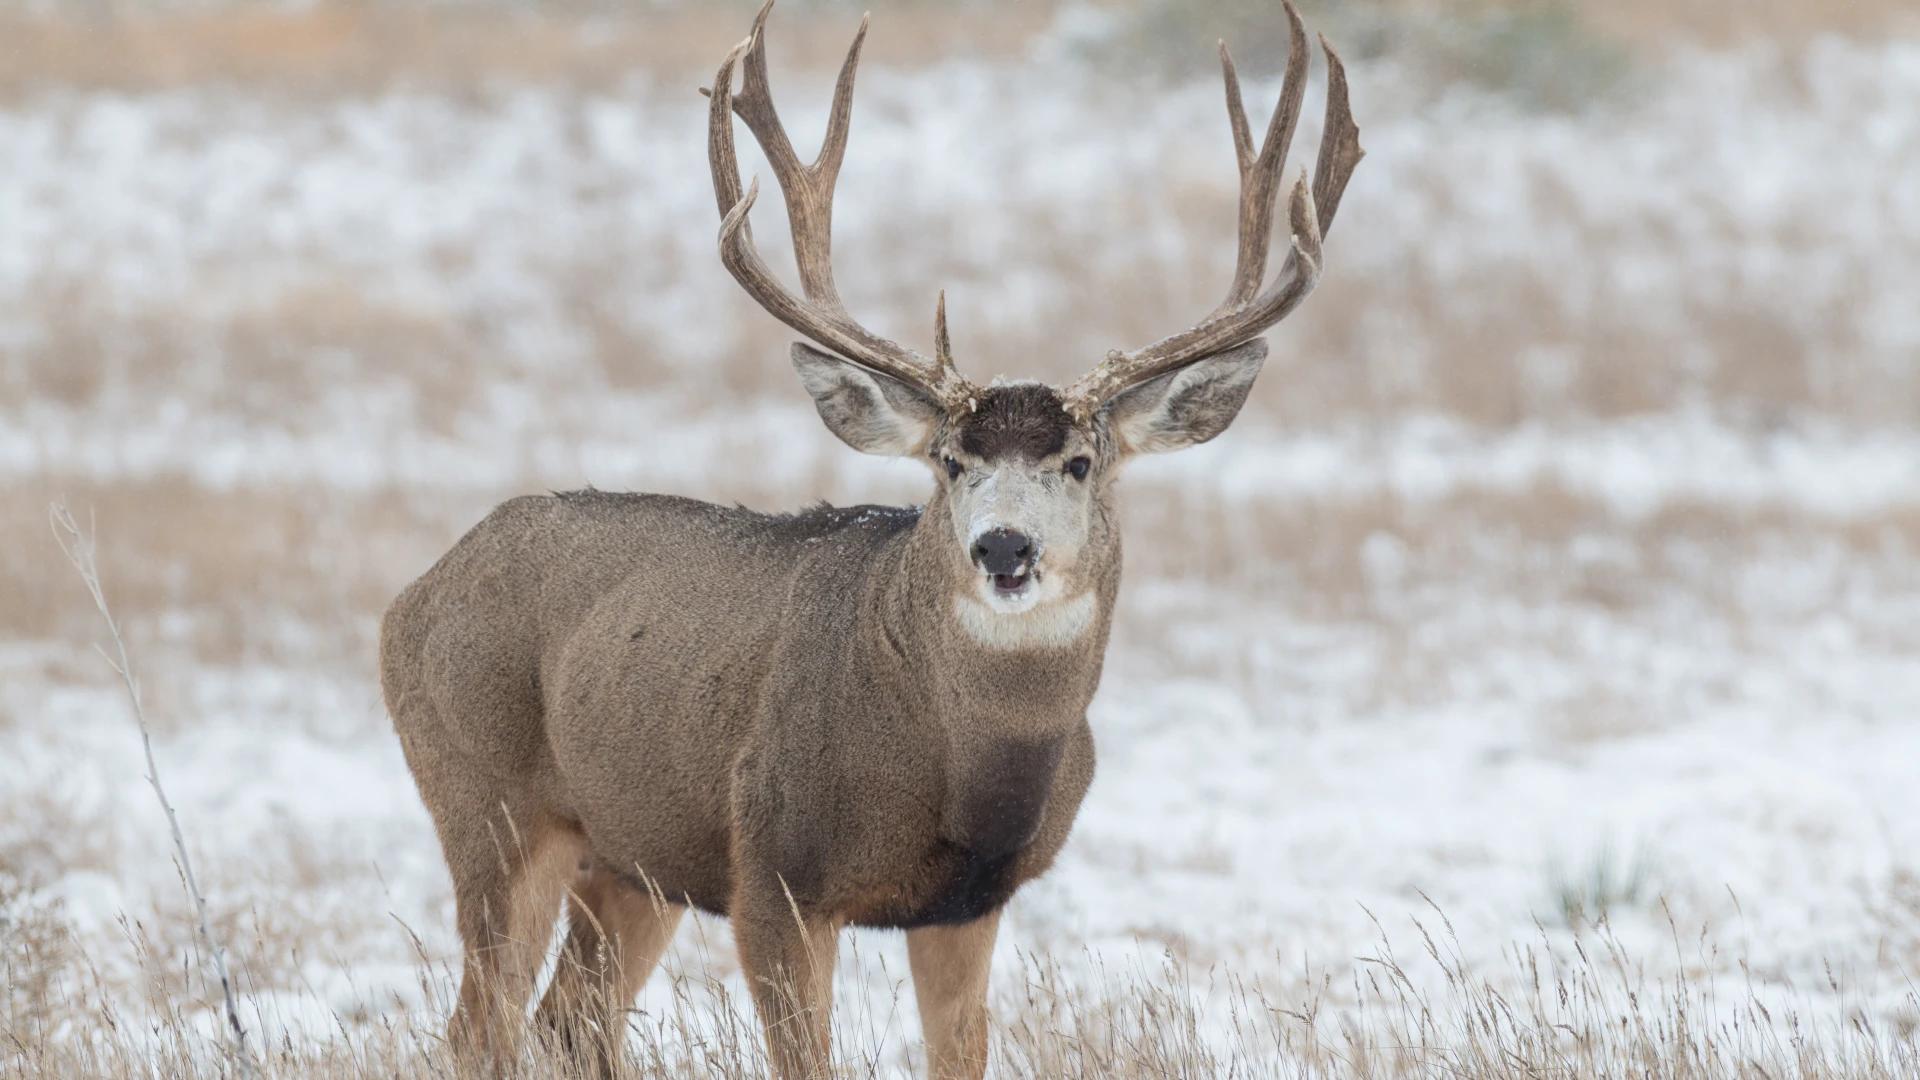 Wyoming range mule deer herd hit hardest by winter weather